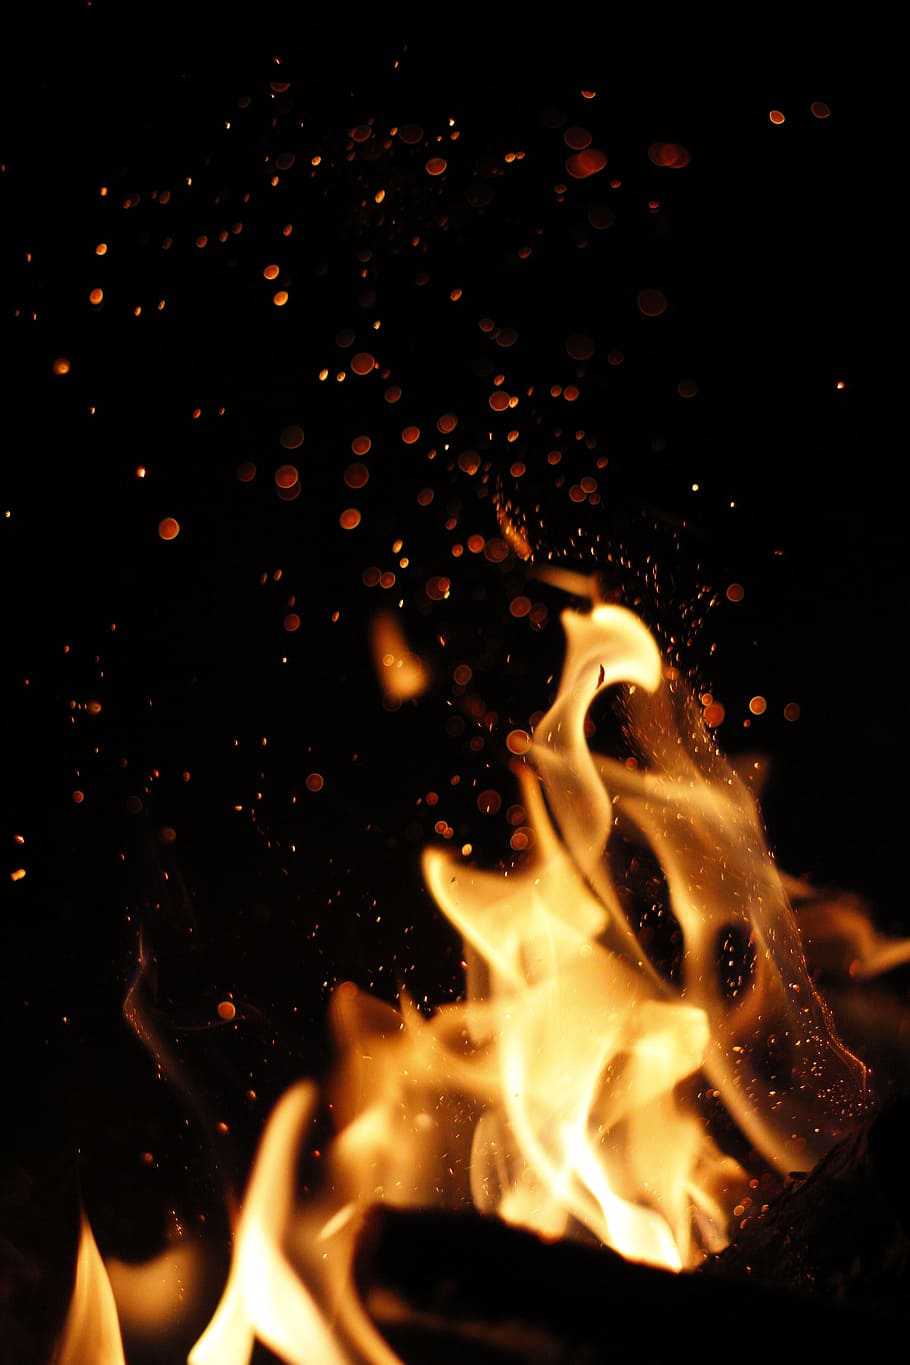 불, 뜨거운, 고속, 불꽃, 모닥불, 불 같은, 점화하다, 불타는, 에너지, 노랑